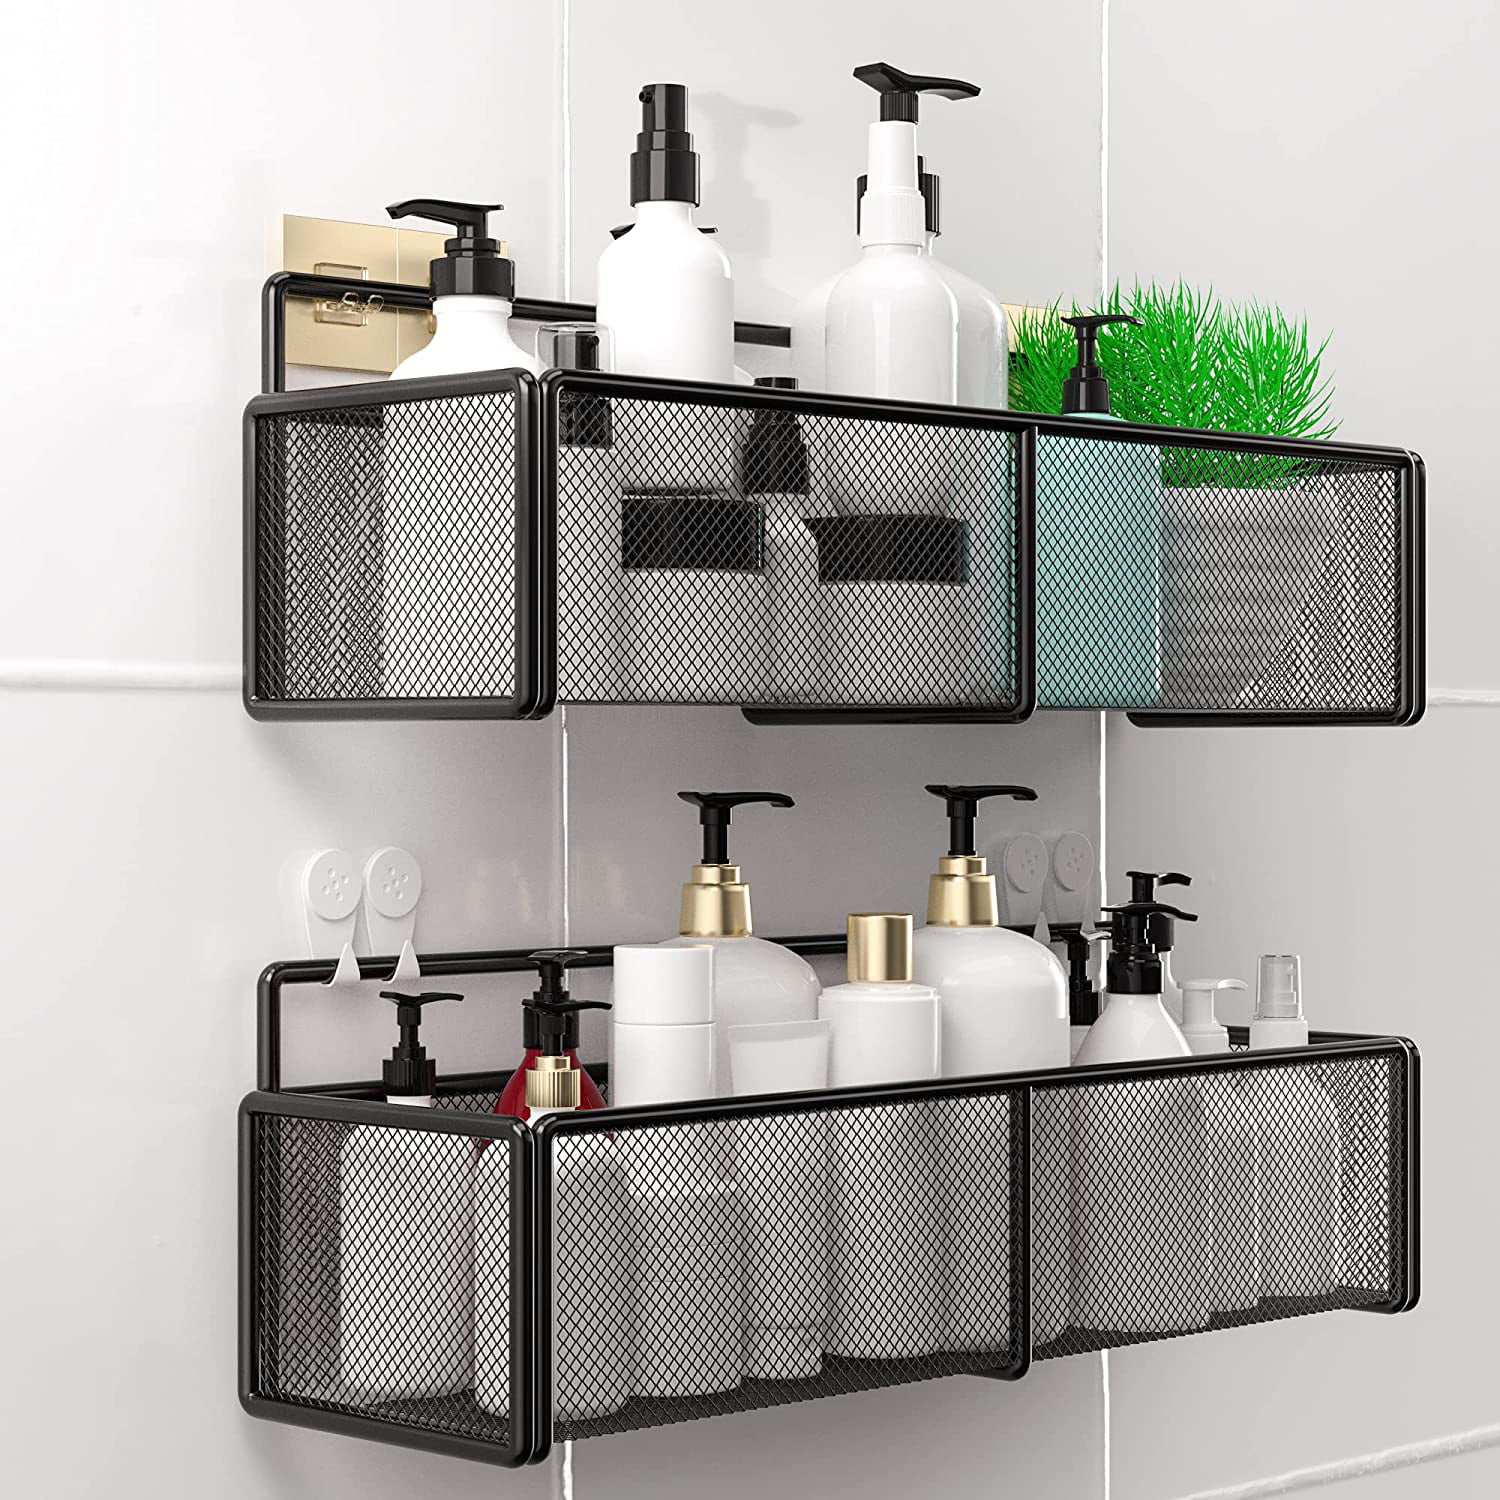 Self-adhesive Kitchen Storage Rack Organizer Bathroom Shower Holder Shelf Basket 